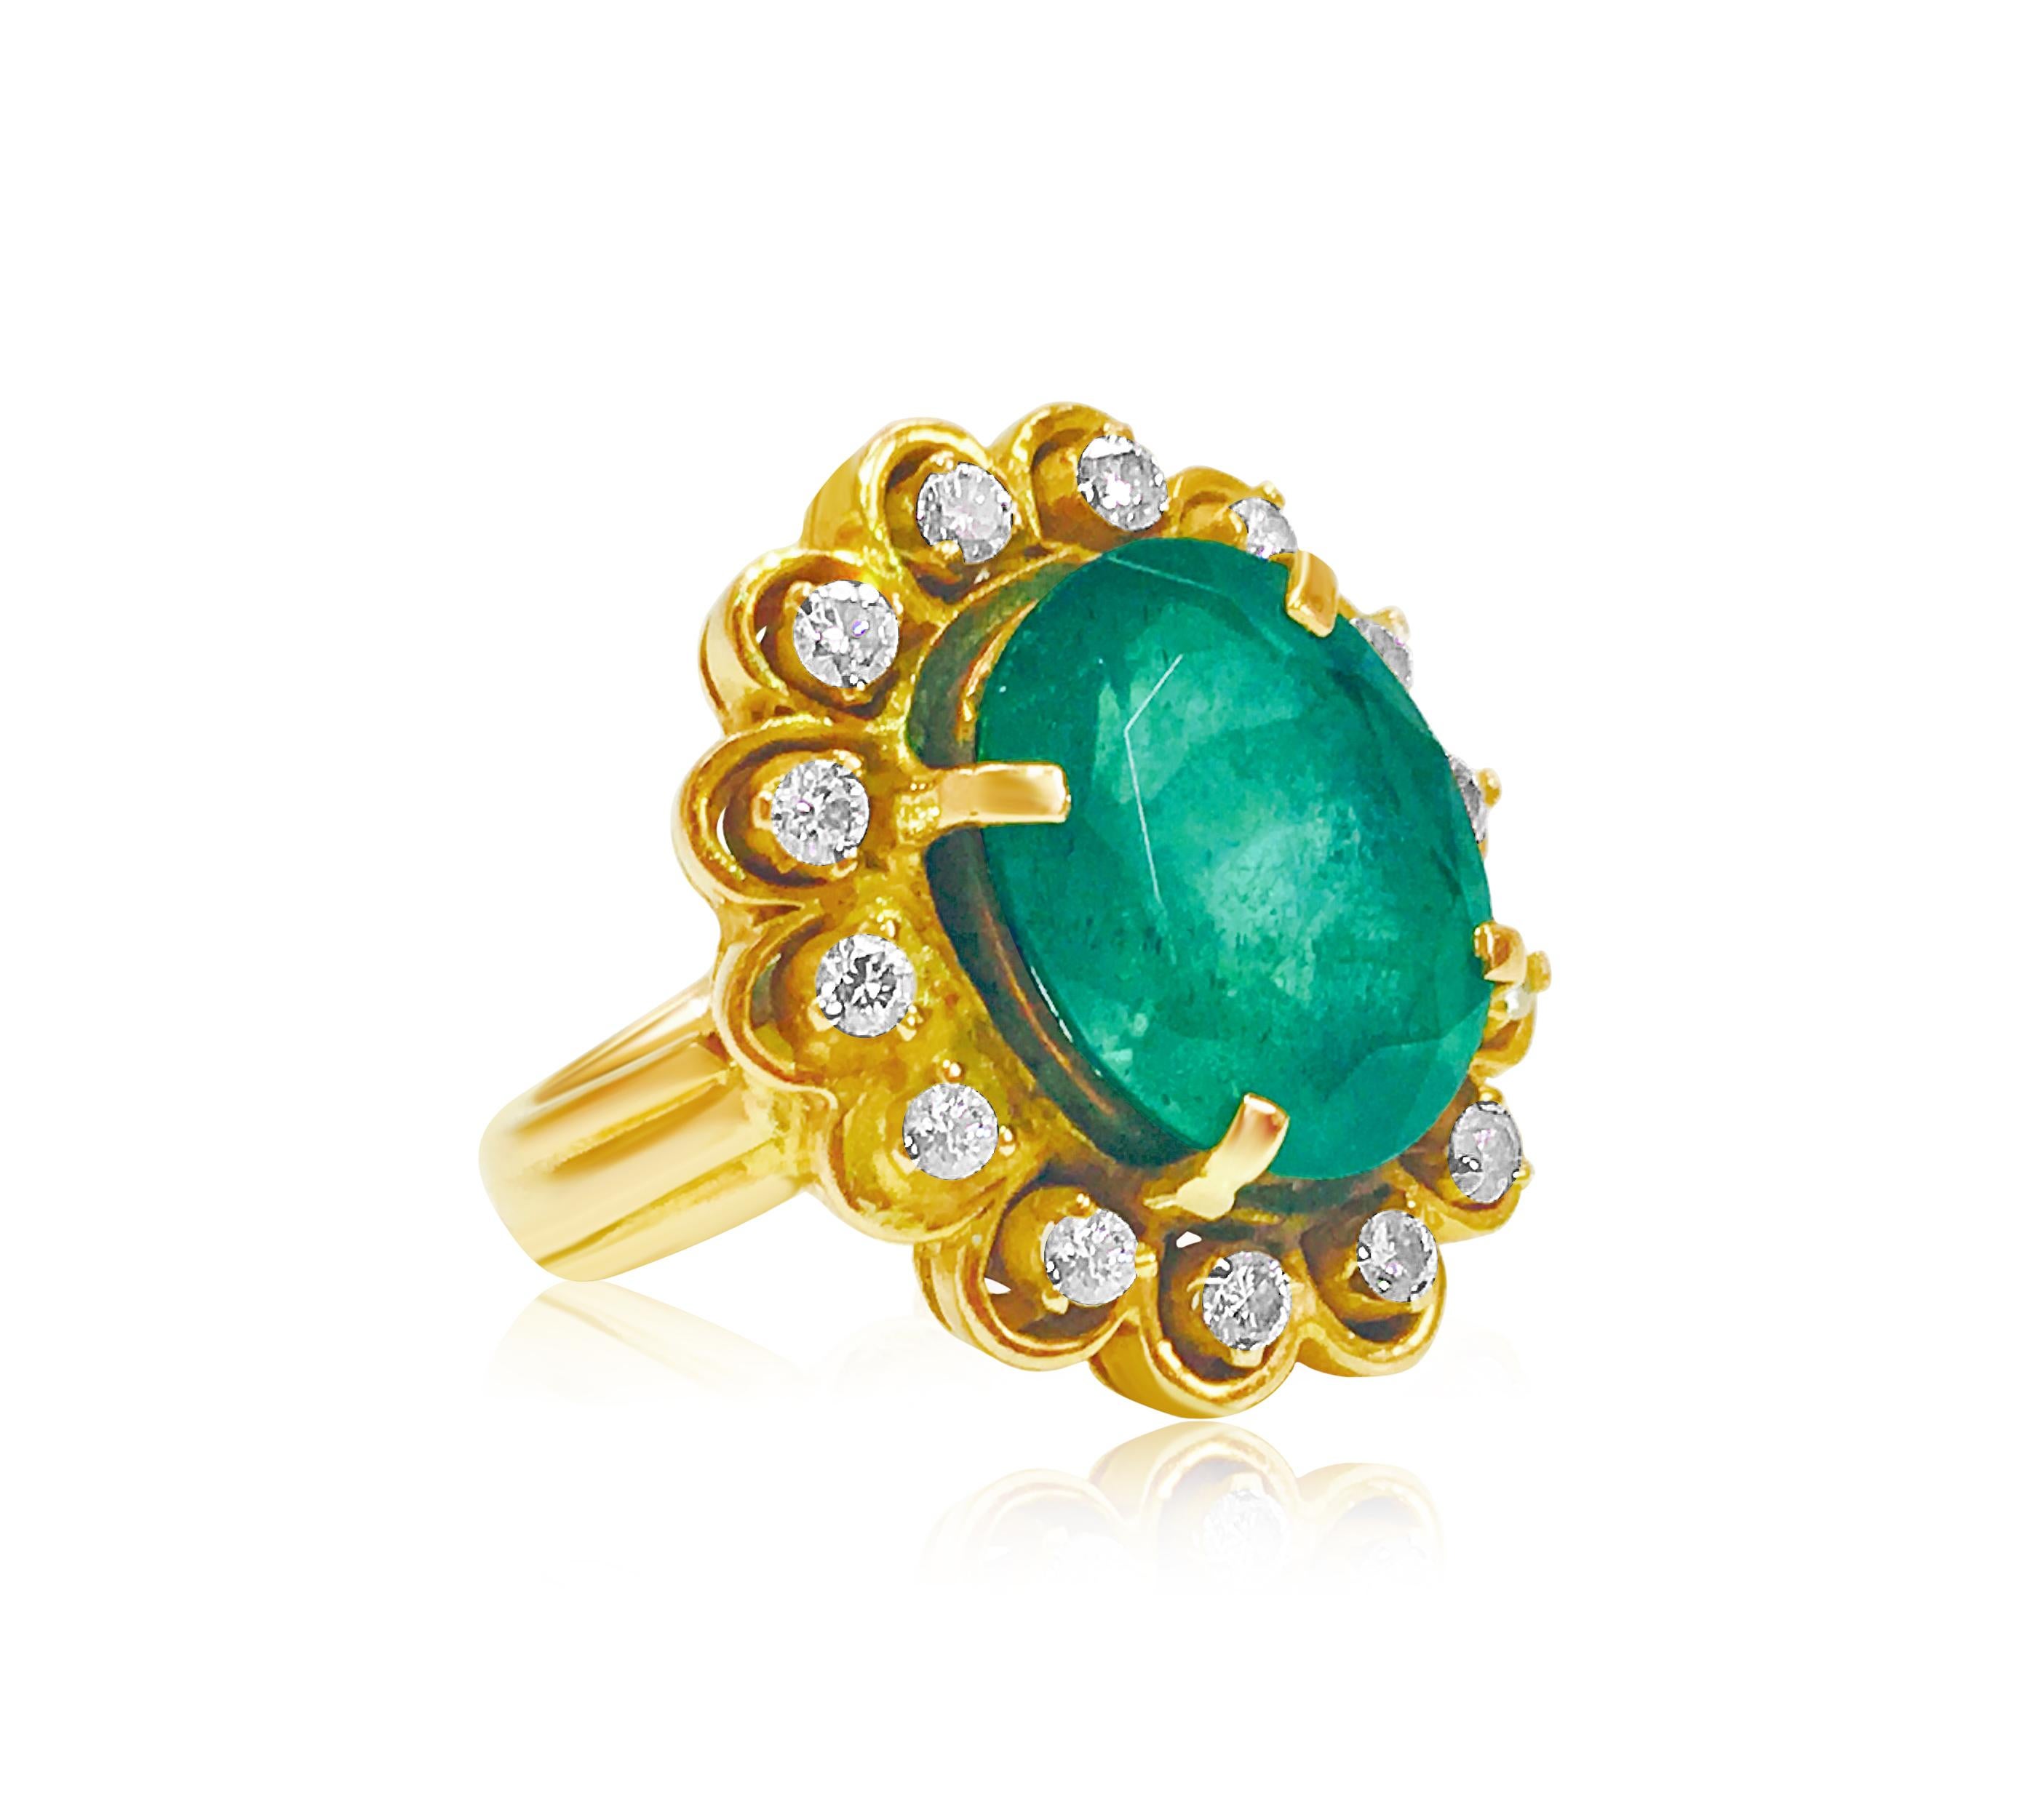 Schwelgen Sie in luxuriöser Eleganz mit diesem Vintage-Ring, der fachmännisch aus 18 Karat Gelbgold gefertigt wurde. In seiner Mitte glänzt ein prächtiger natürlicher Smaragd von 5,50 Karat im Ovalschliff, der von zierlichen Zacken gehalten wird. Um